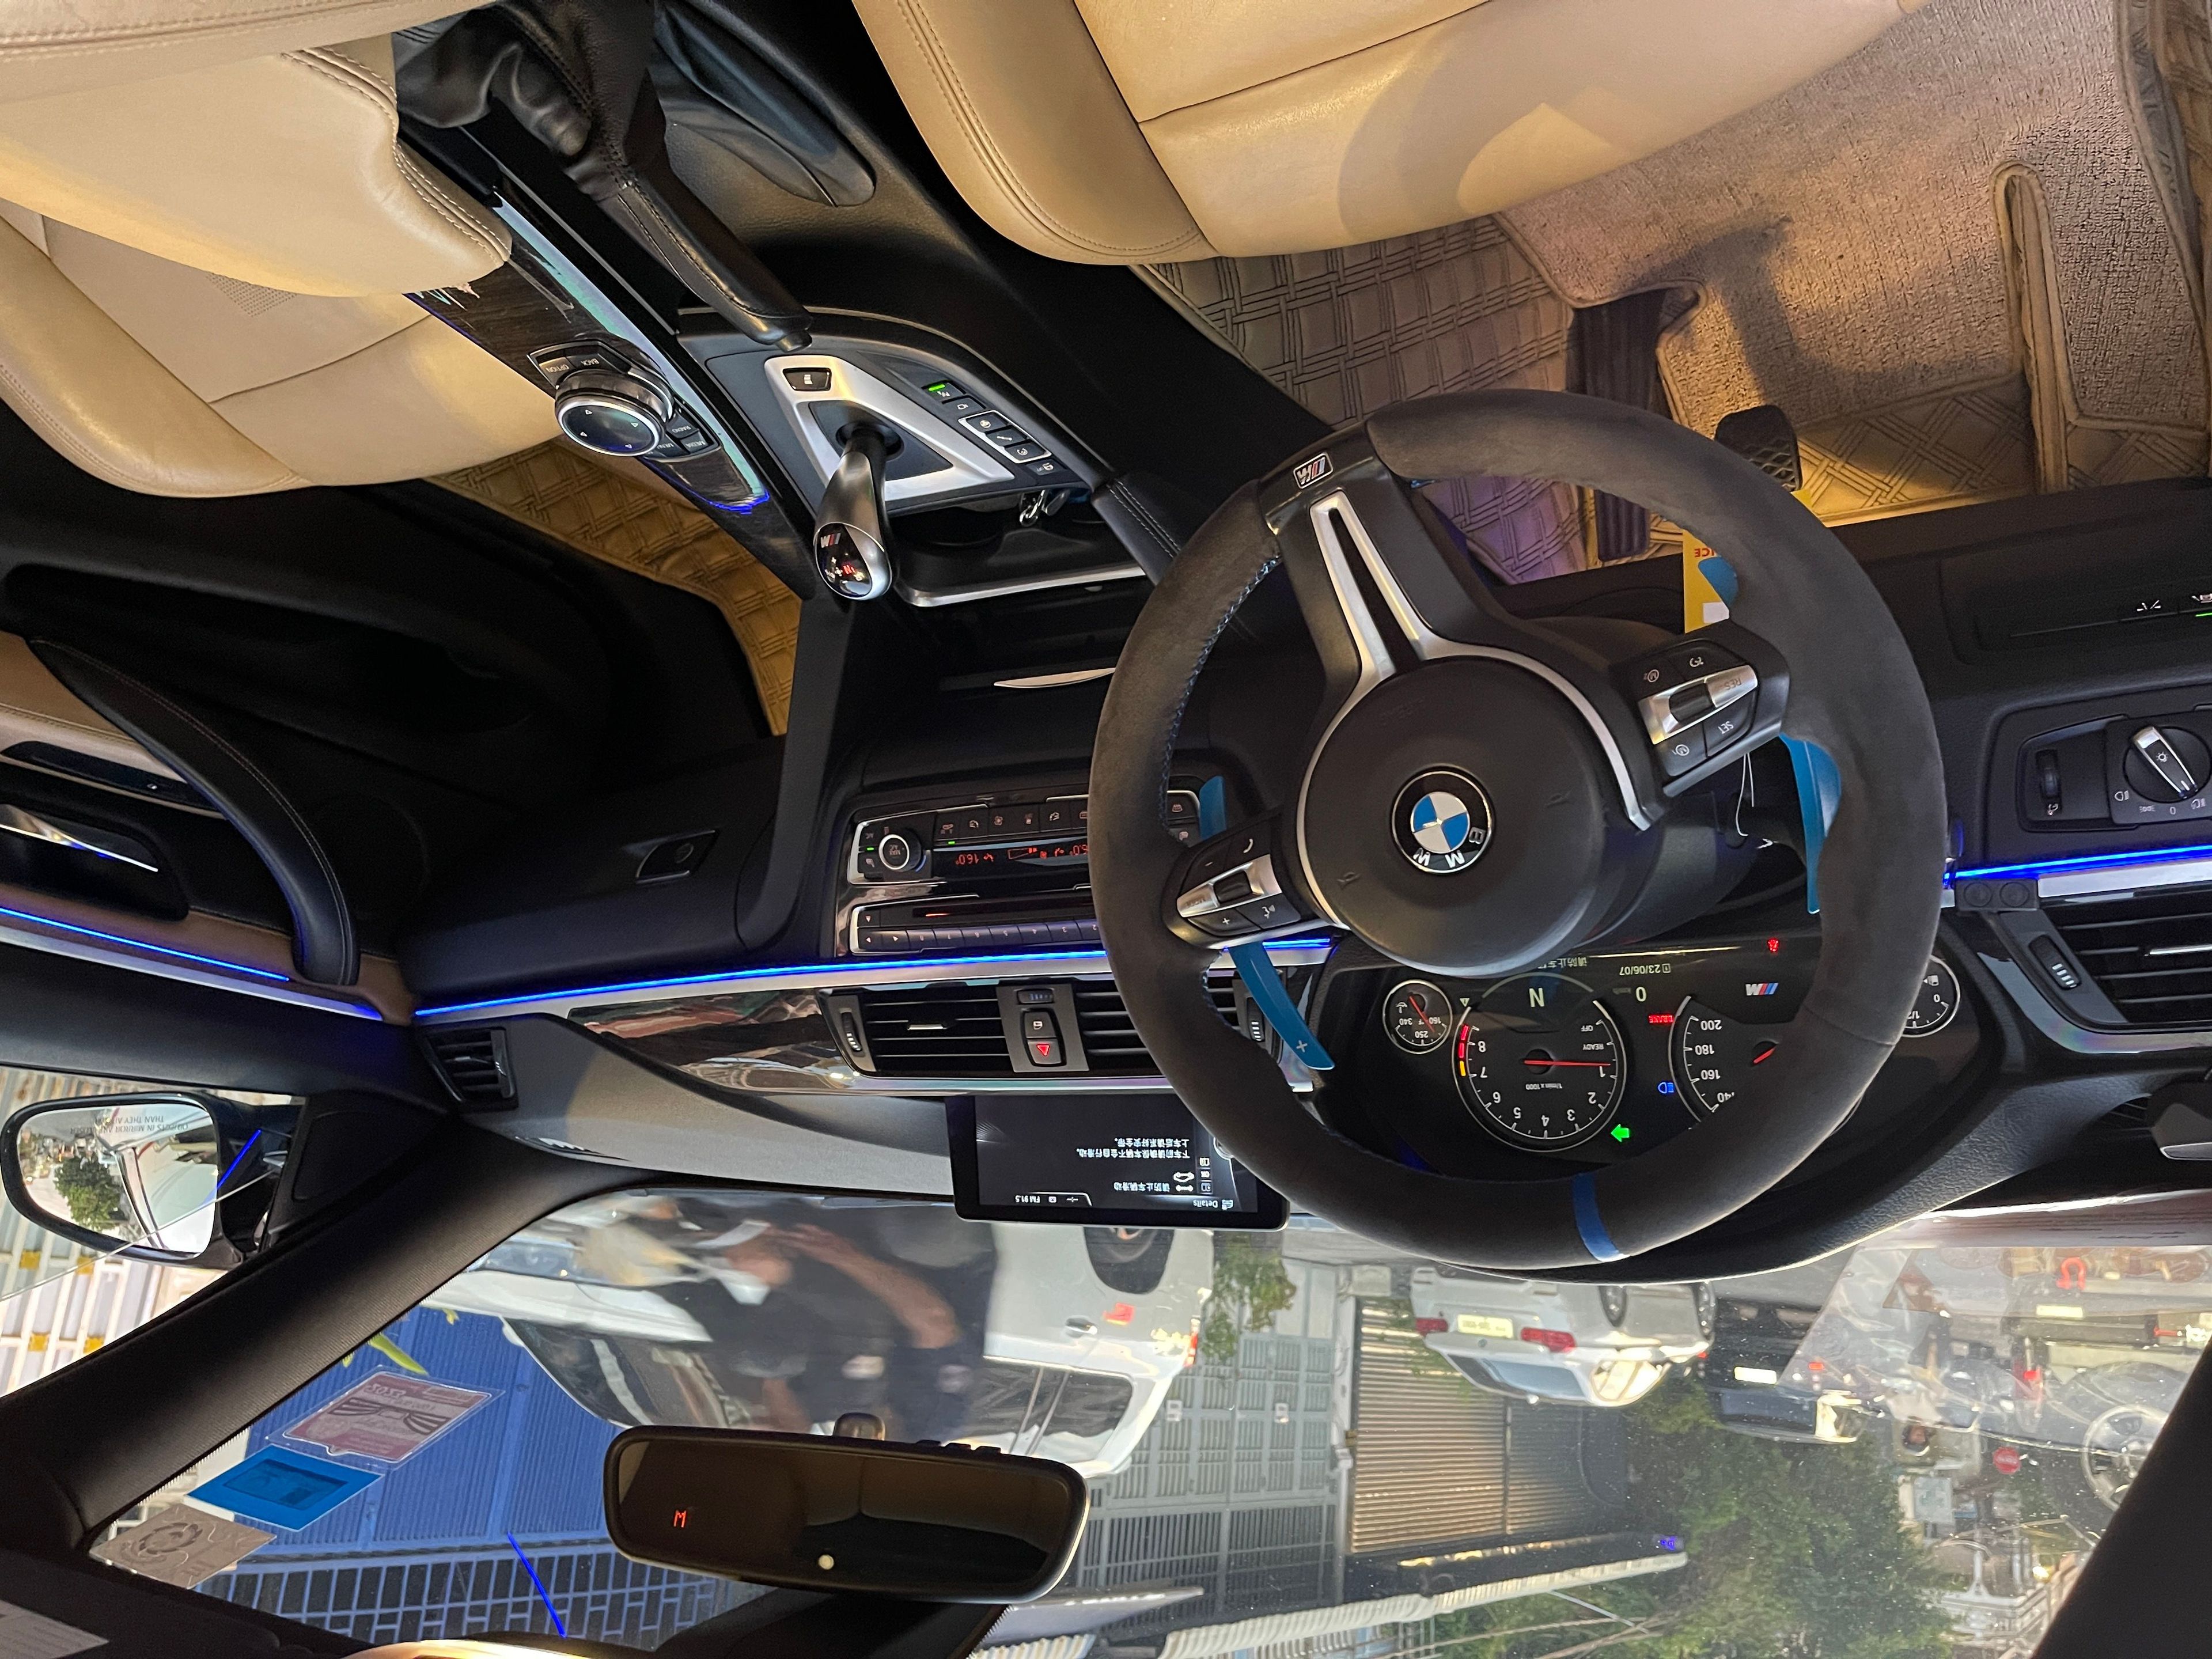 BMW M4 2015